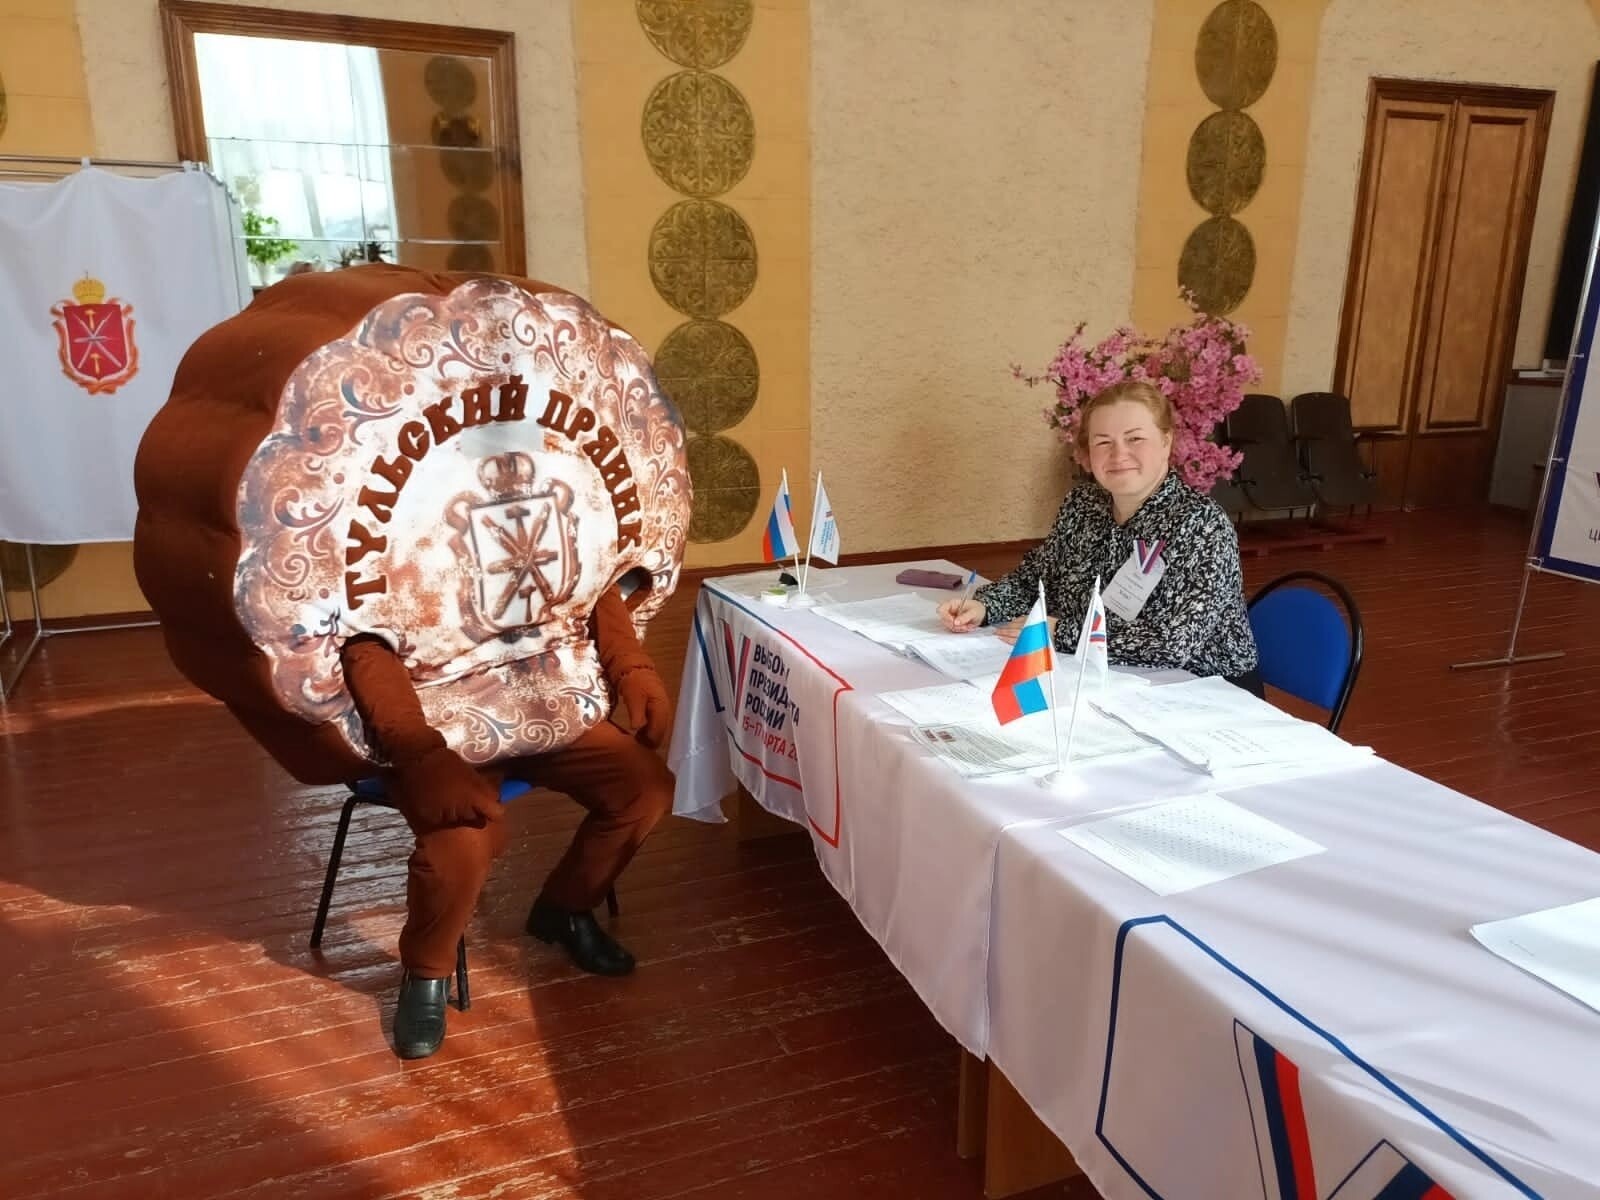 Избиратели в костюмах голосовали в Новомосковске. Фото пресс-службы избирательной комиссии Тульской области